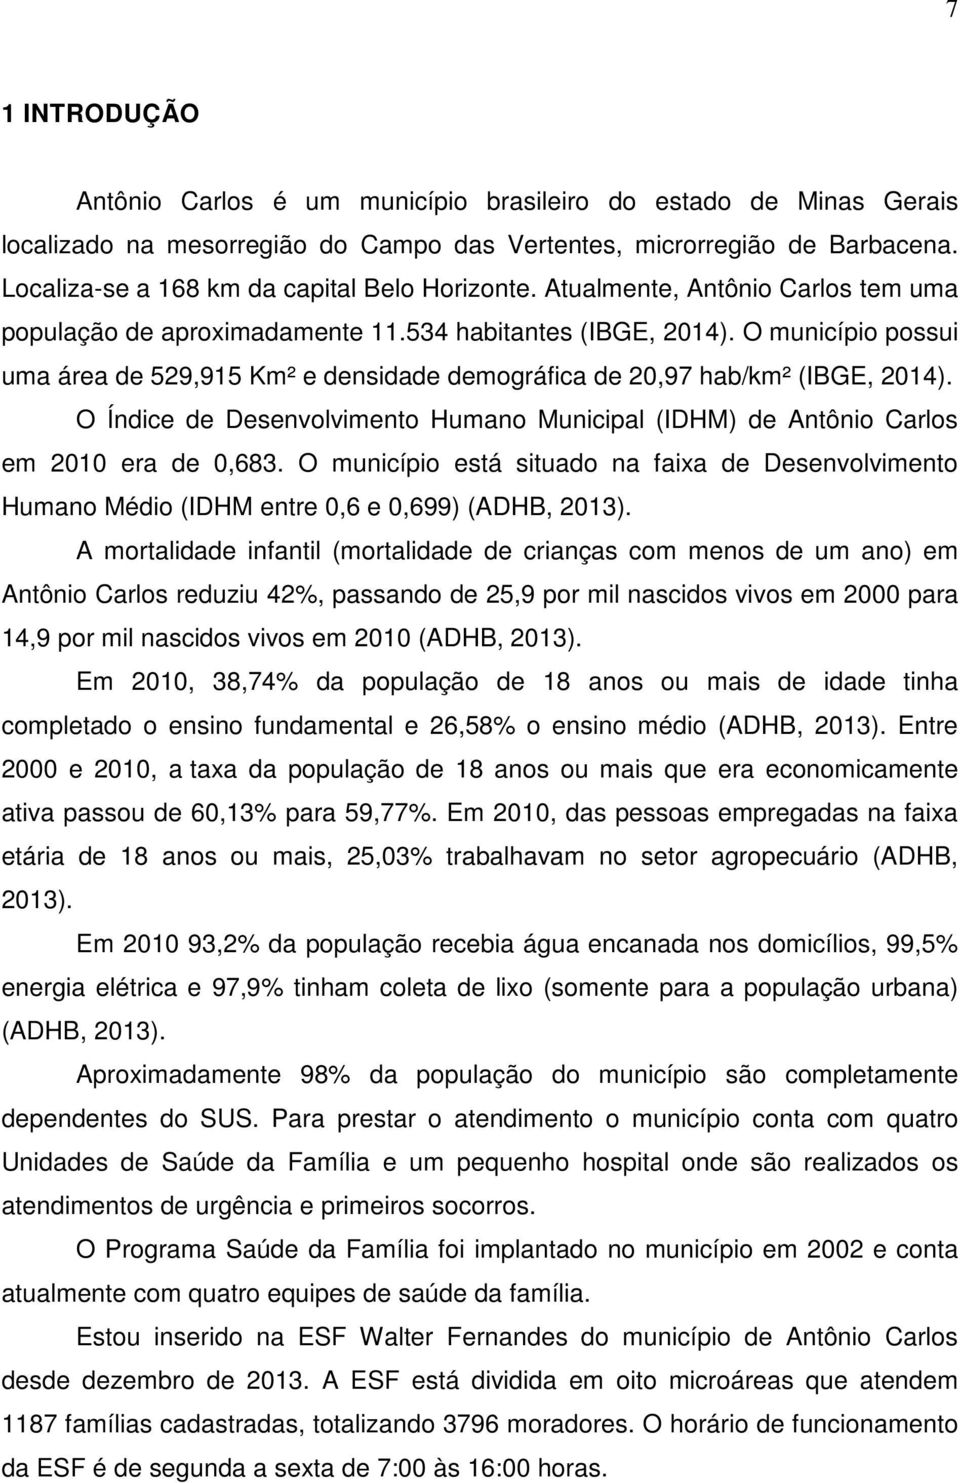 O município possui uma área de 529,915 Km² e densidade demográfica de 20,97 hab/km² (IBGE, 2014). O Índice de Desenvolvimento Humano Municipal (IDHM) de Antônio Carlos em 2010 era de 0,683.